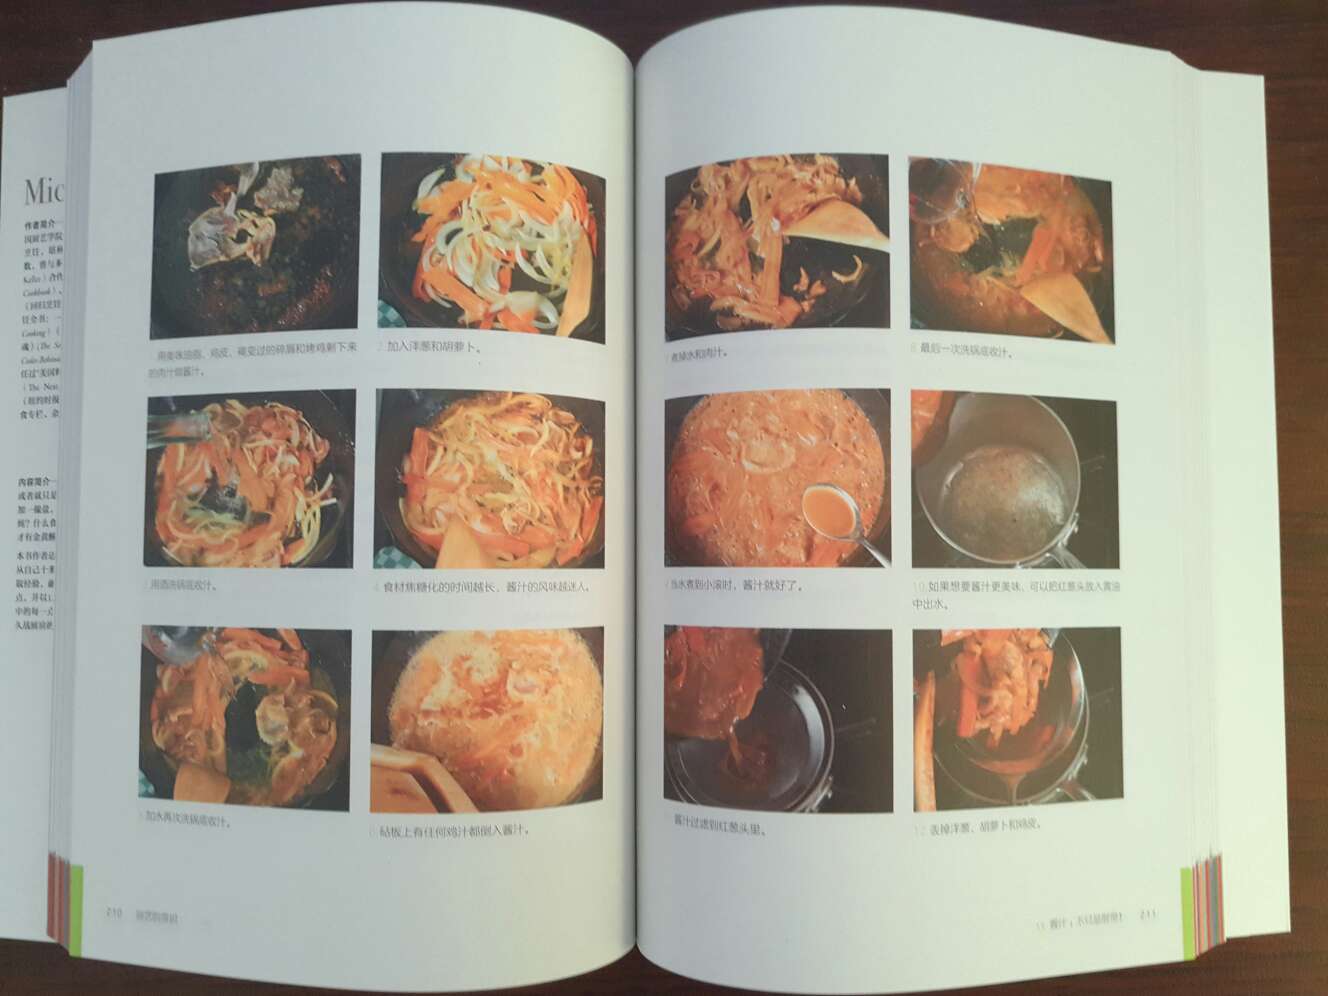 纸张很好，书也是彩页的，先介绍原理，在介绍菜谱，很喜欢这书。